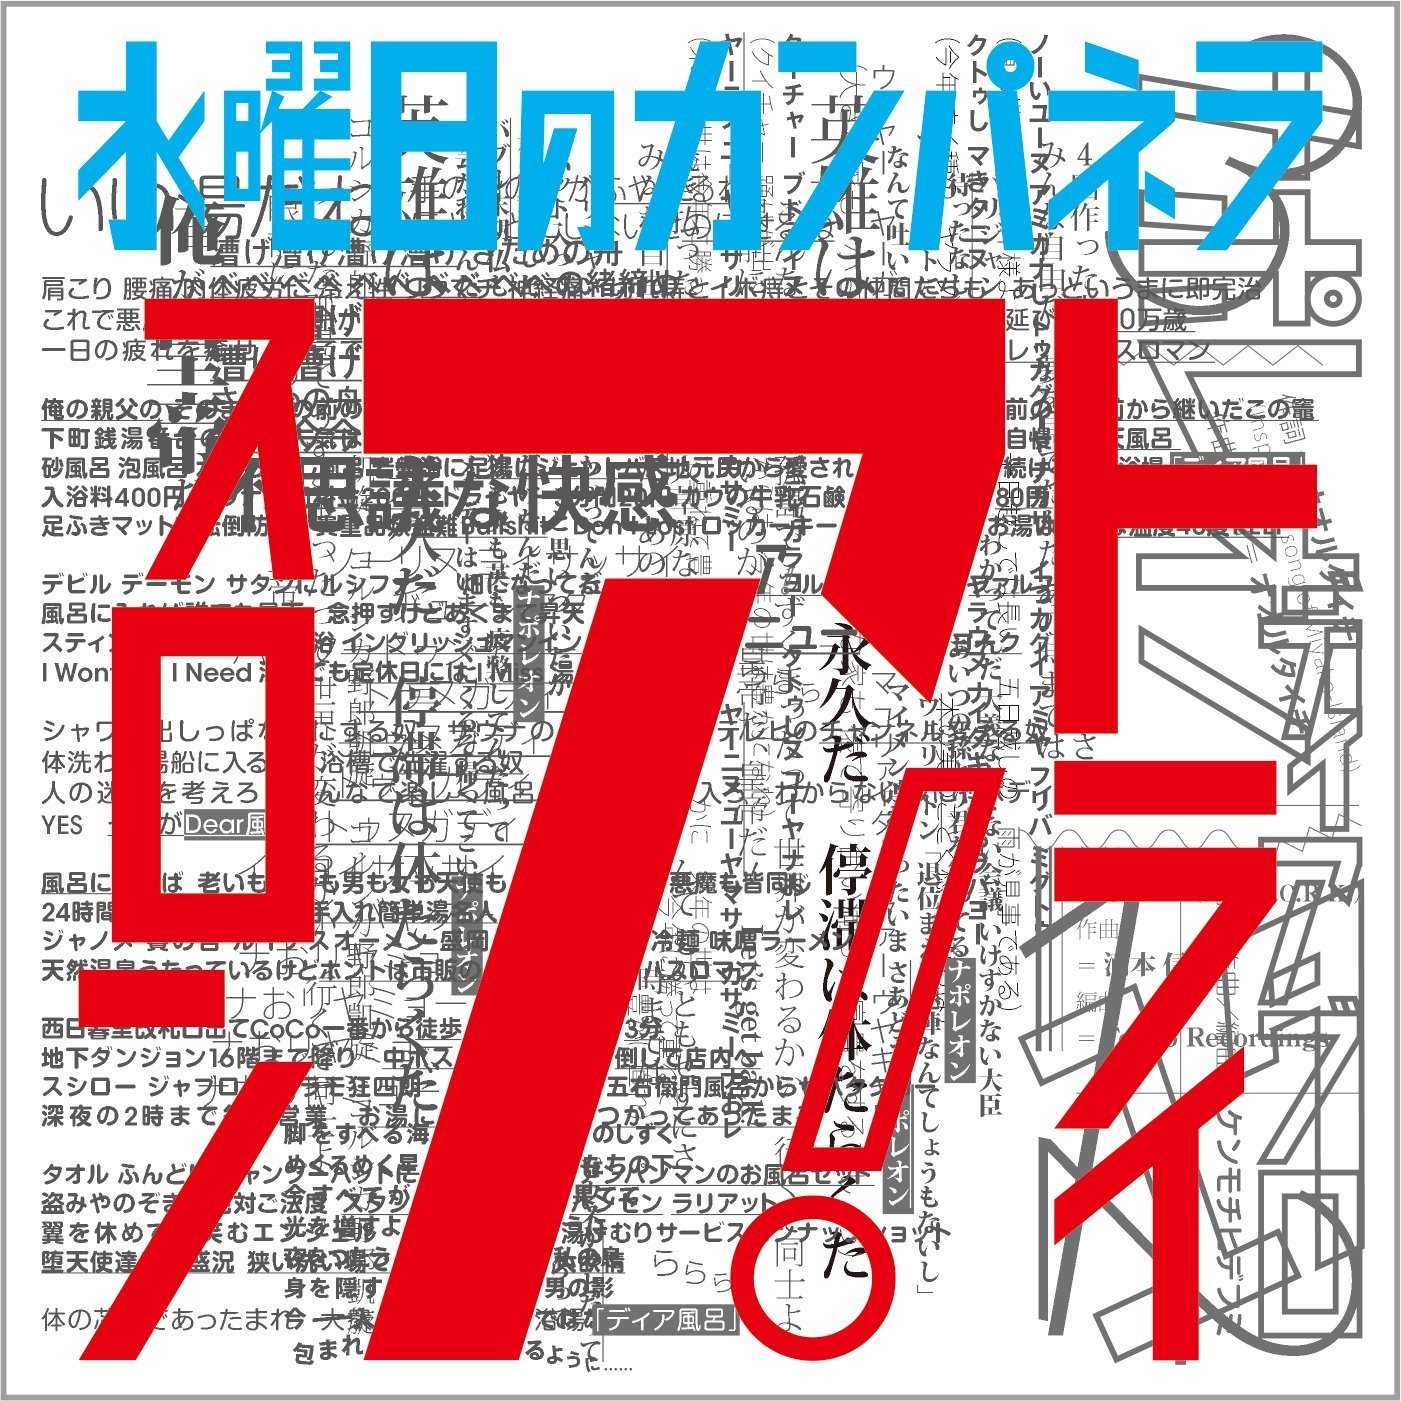 水曜日のカンパネラ (すいようびのカンパネラ) 1st EP『トライアスロン』(2015年4月15日) 高画質ジャケット画像